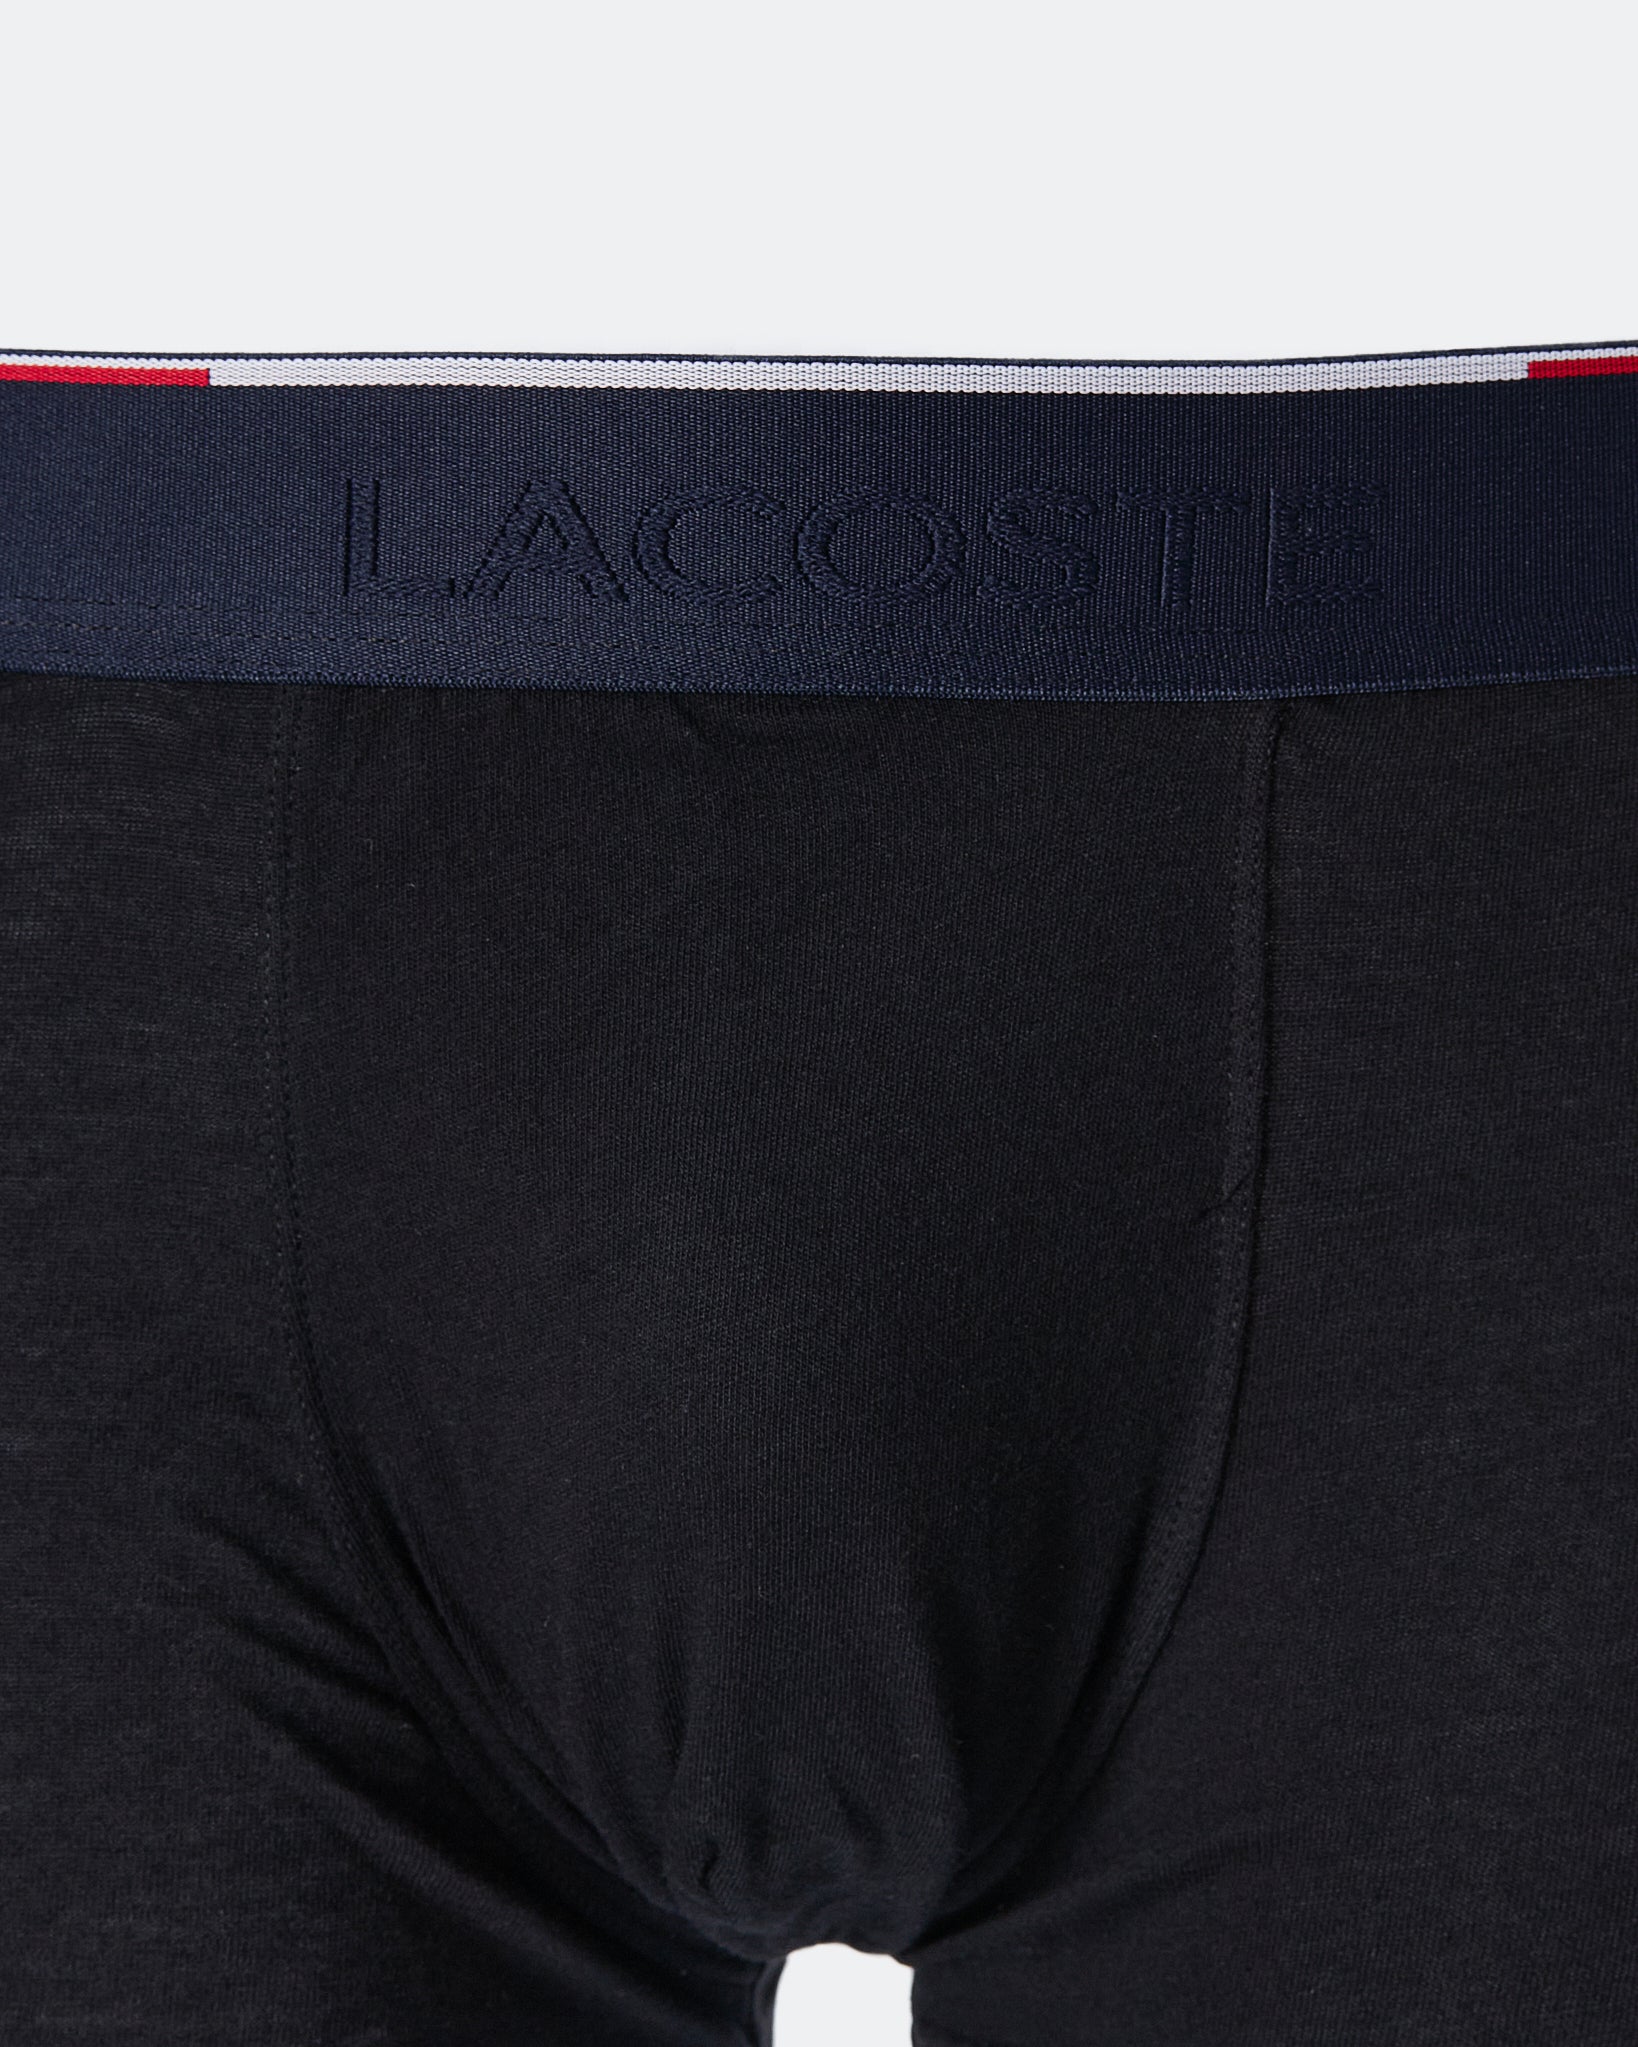 LAC Logo Embroidered Men Black Underwear 5.90